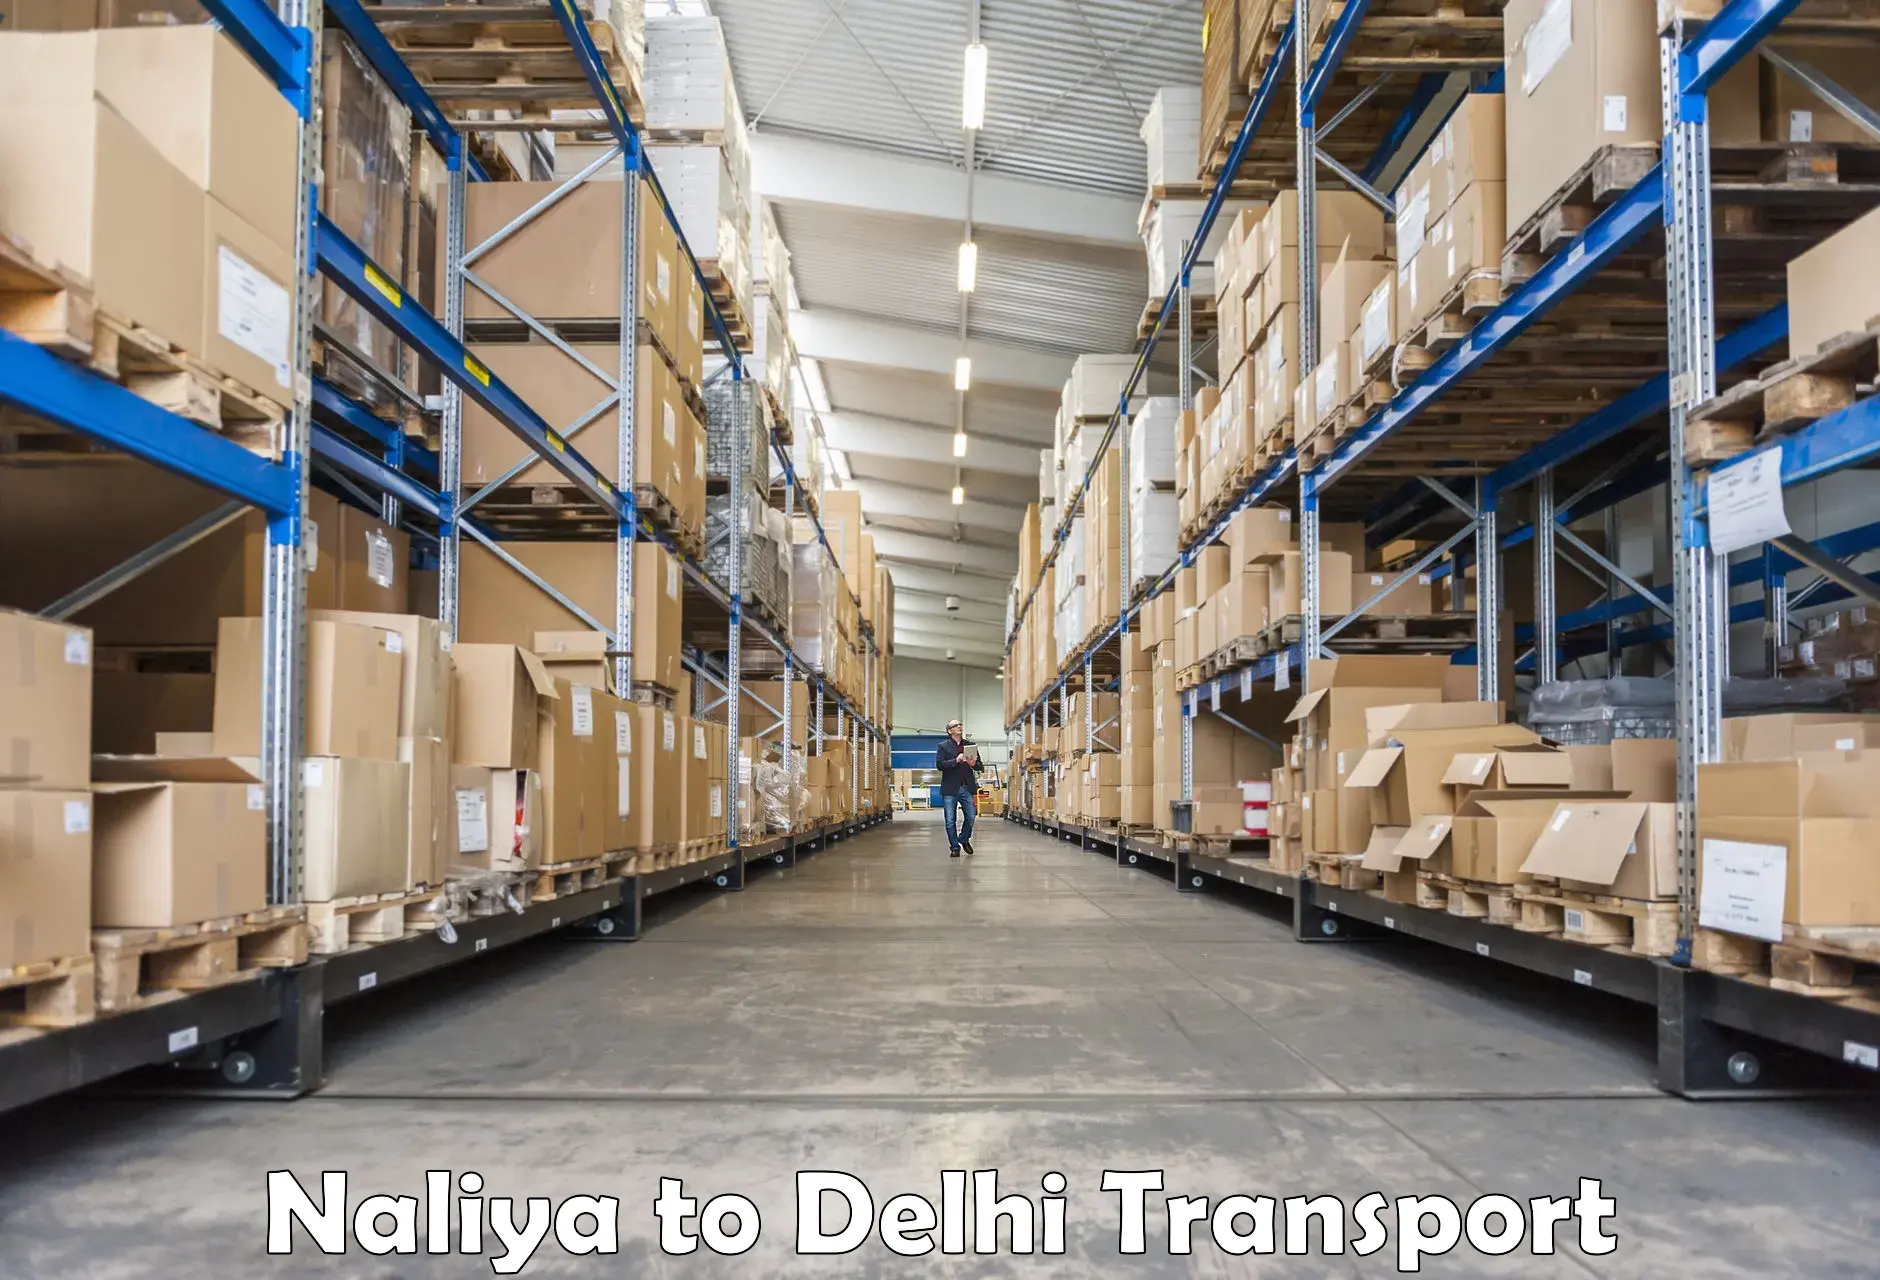 Bike transport service Naliya to NCR